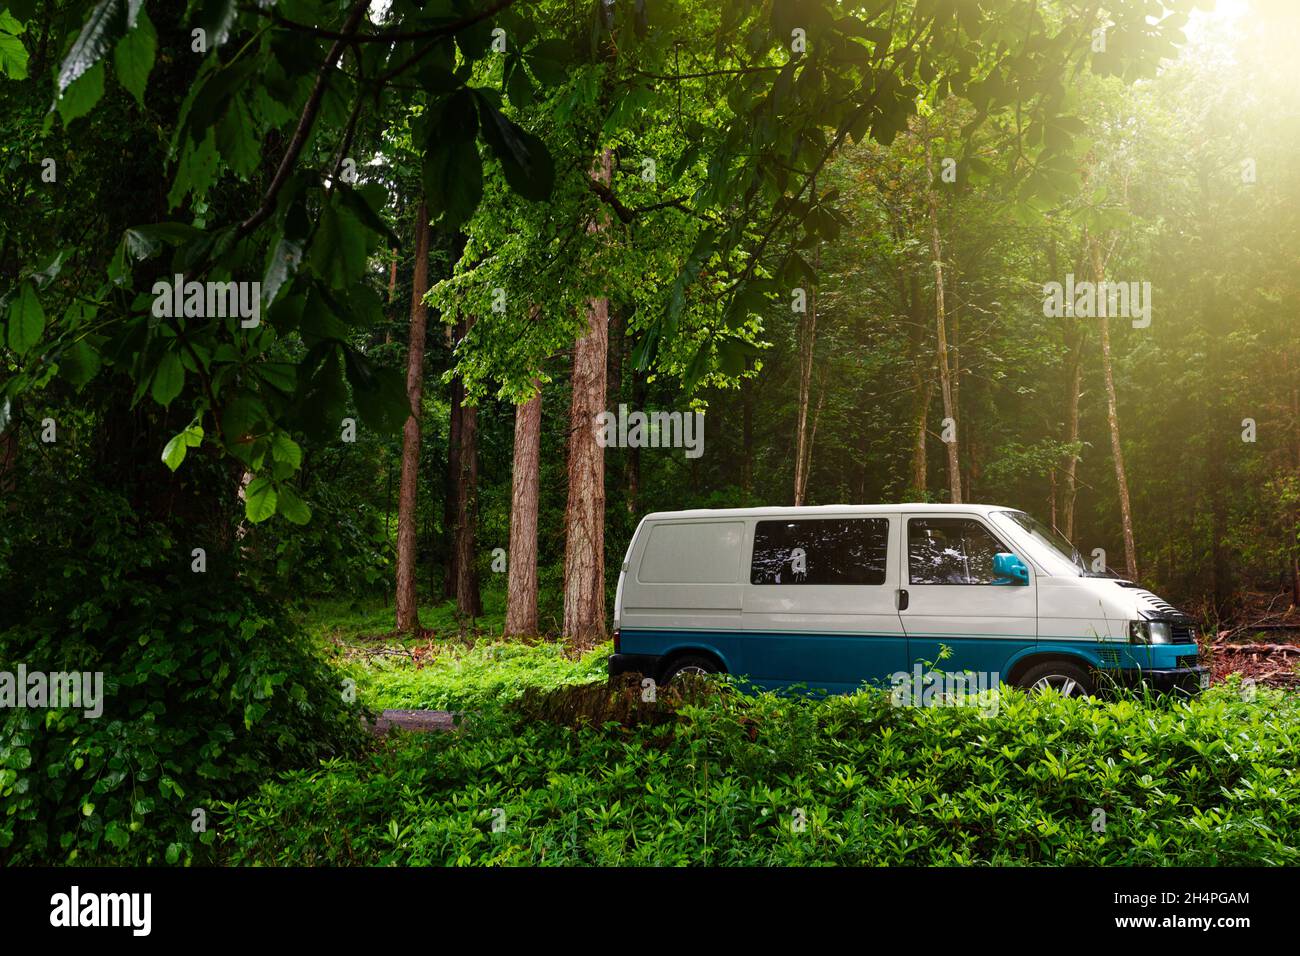 T4 van trasportatore in una foresta con il sole che splende Foto Stock